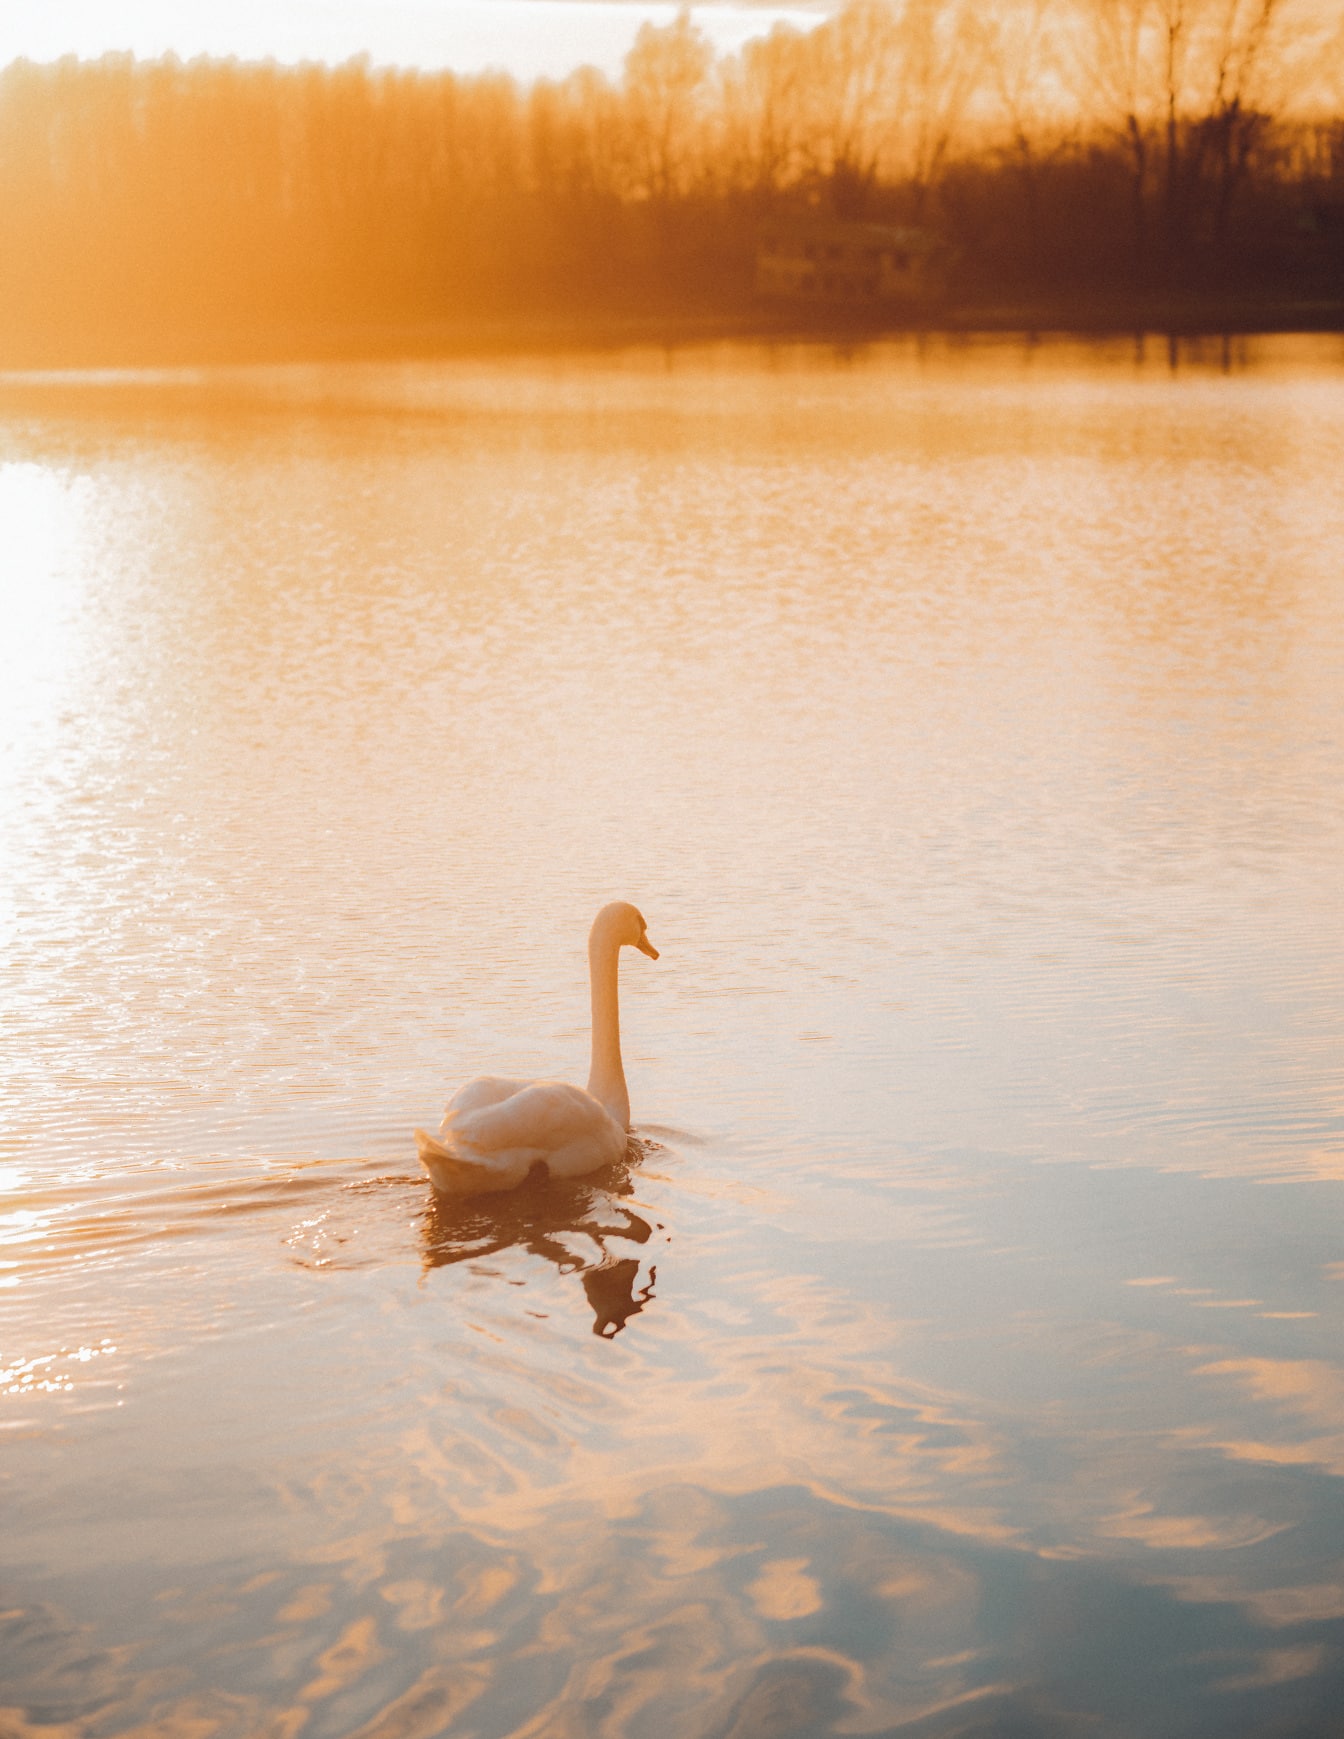 Cisne nadando no lago no pôr do sol ensolarado brilhante